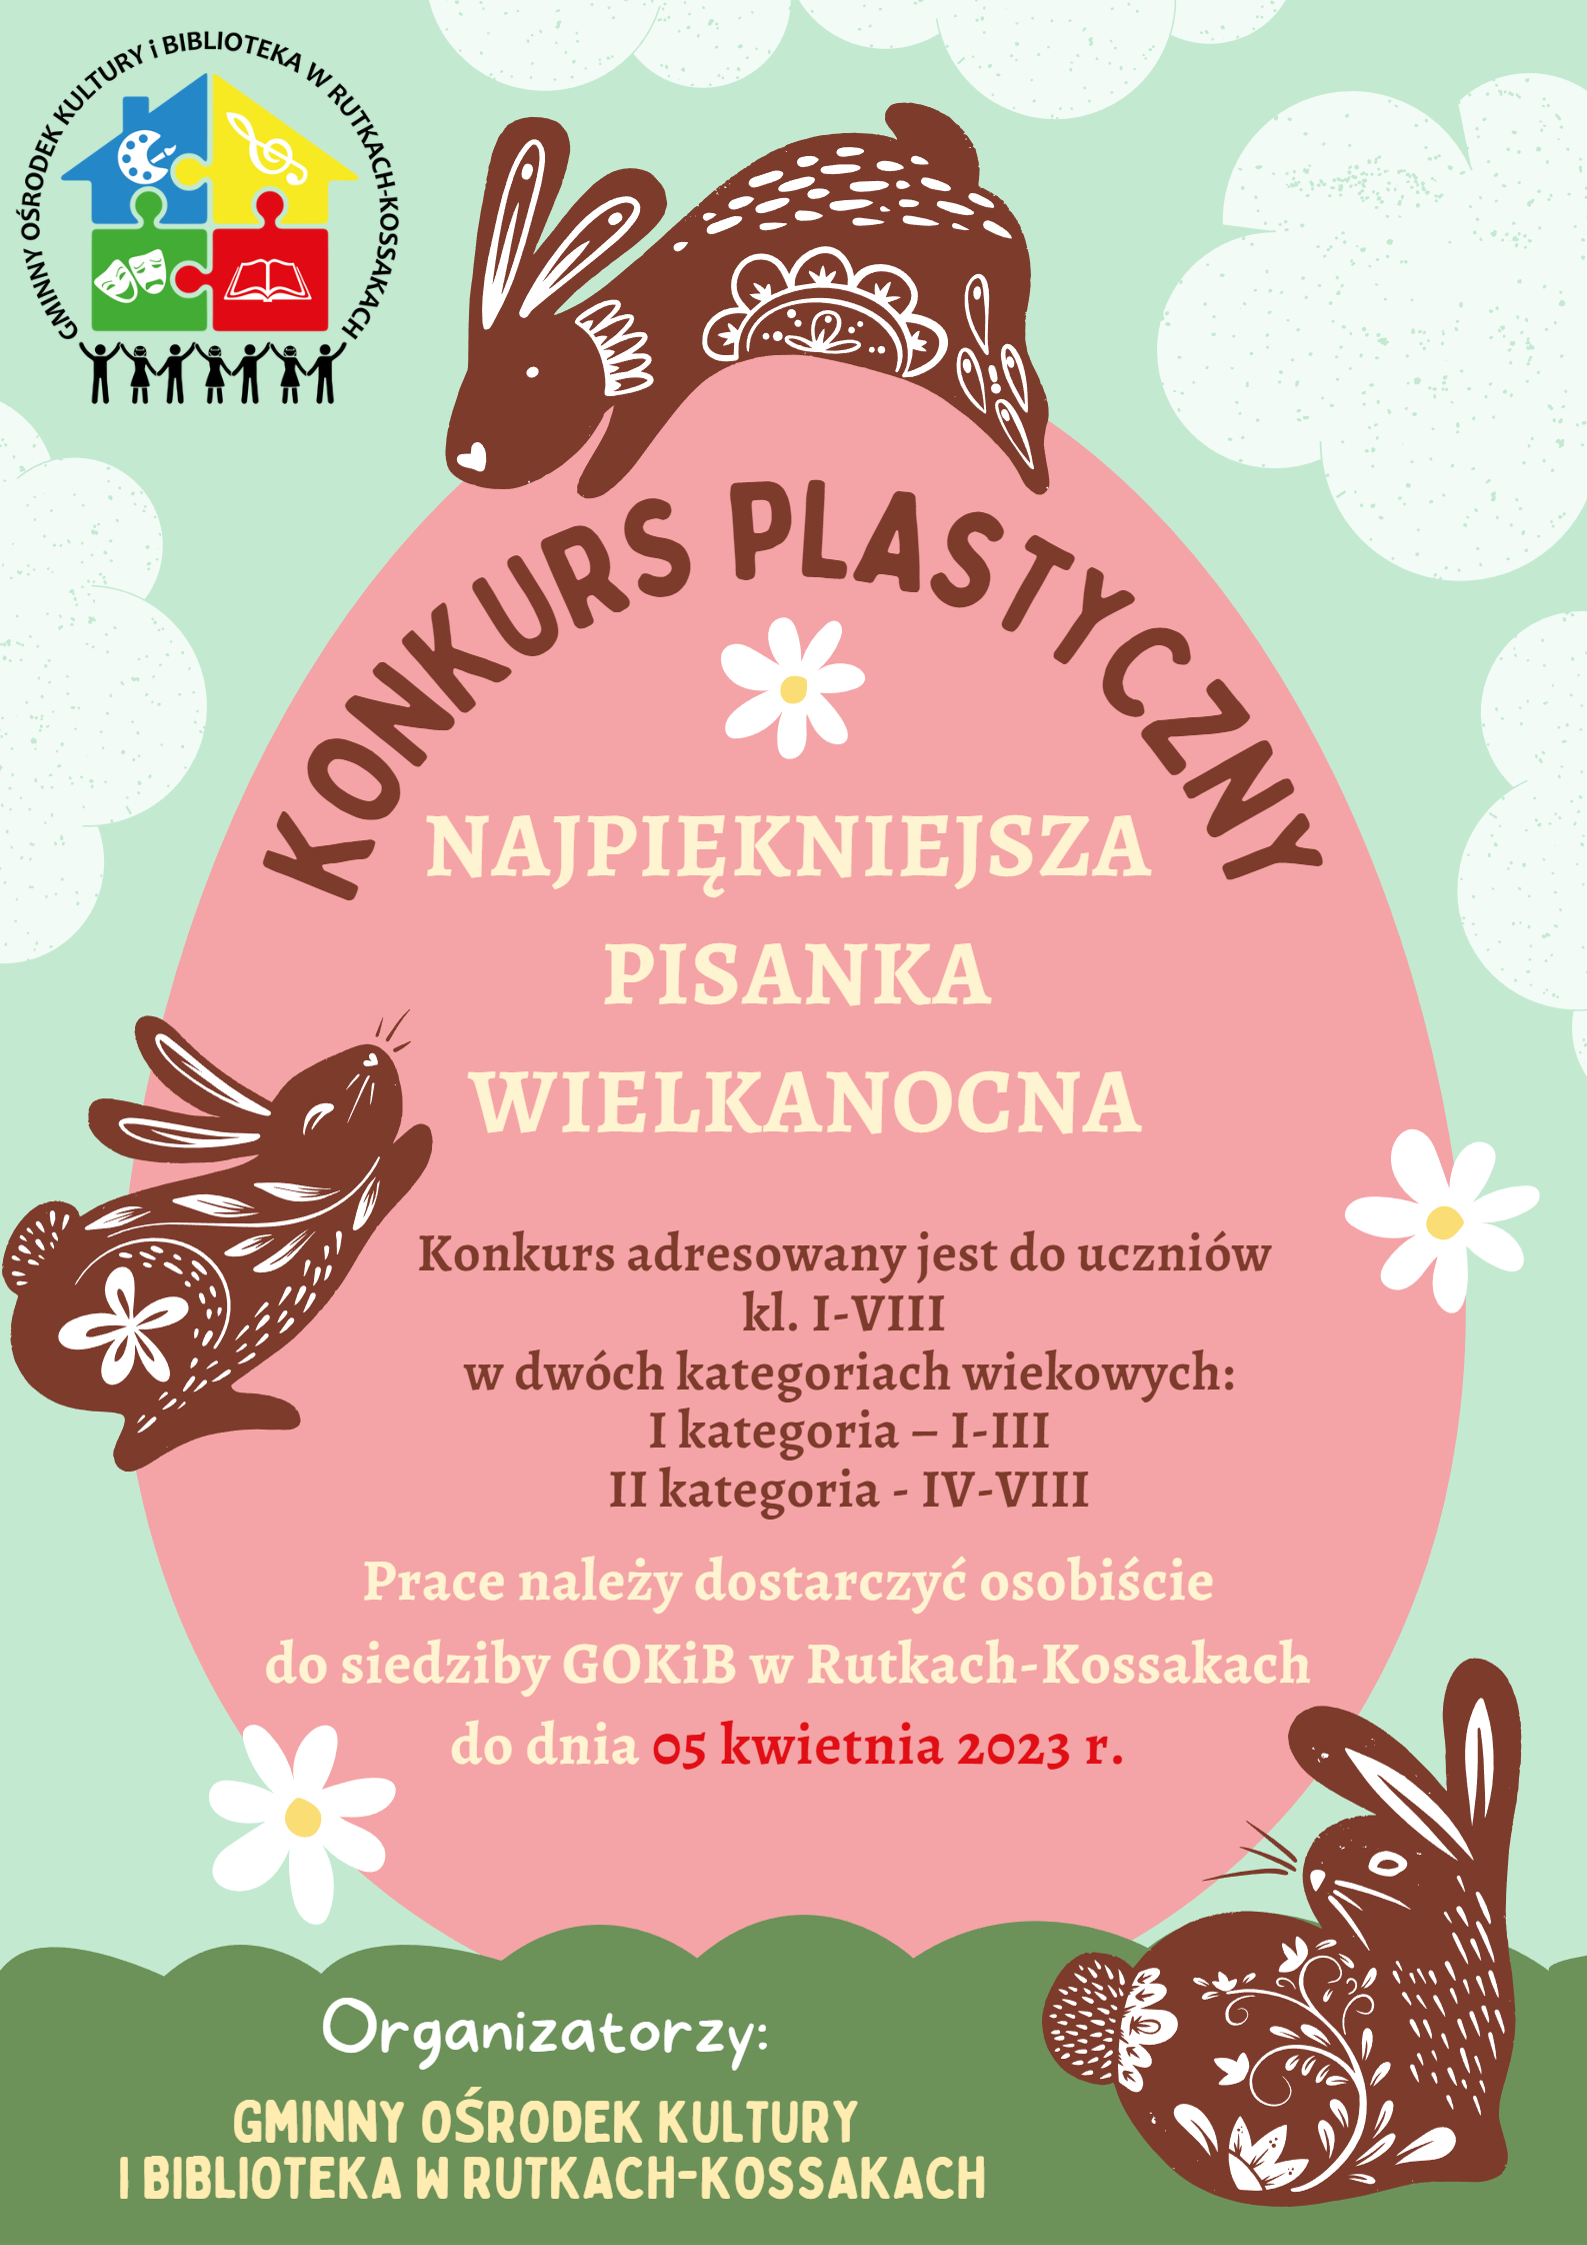 Plakat zachęcający do wzięcia udziału w konkursie plastycznym najpiękniejsza pisanka wielkanocna. Konkurs kierowany jest do uczniów klas 1-8. Prace należy dostarczyć osobiście do siedziby GOKIB w Rutkach-Kossakach do 5 kwietnia 2023 roku.